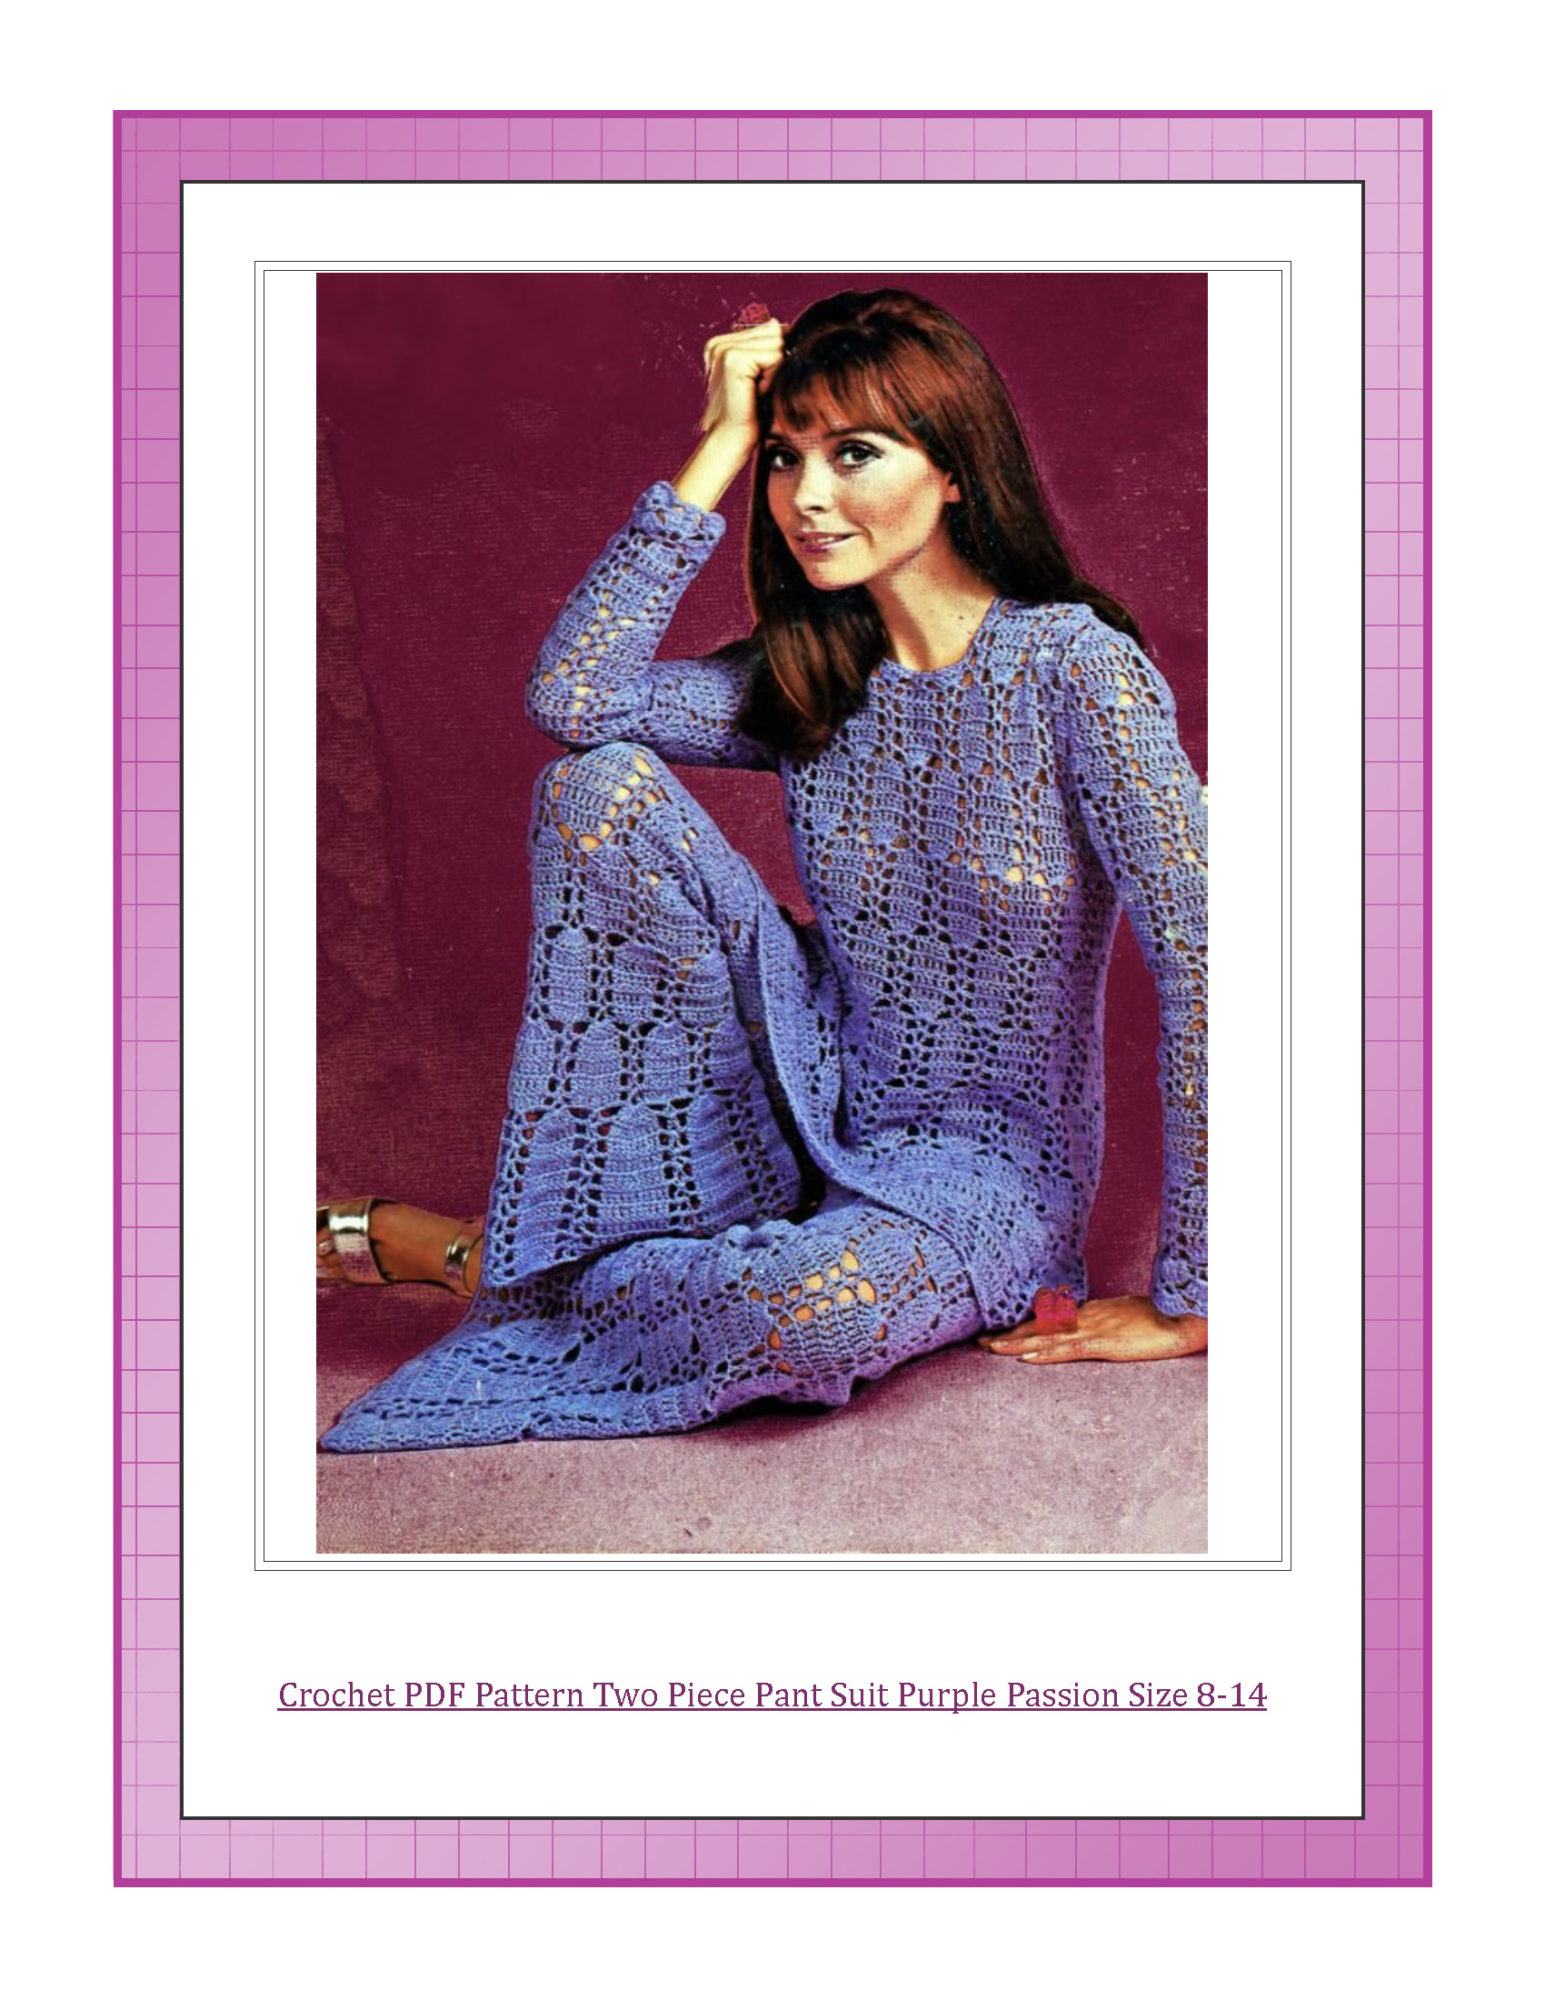 Crochet PDF Pattern Two Piece Pant Suit Purple Passion Size 8-14